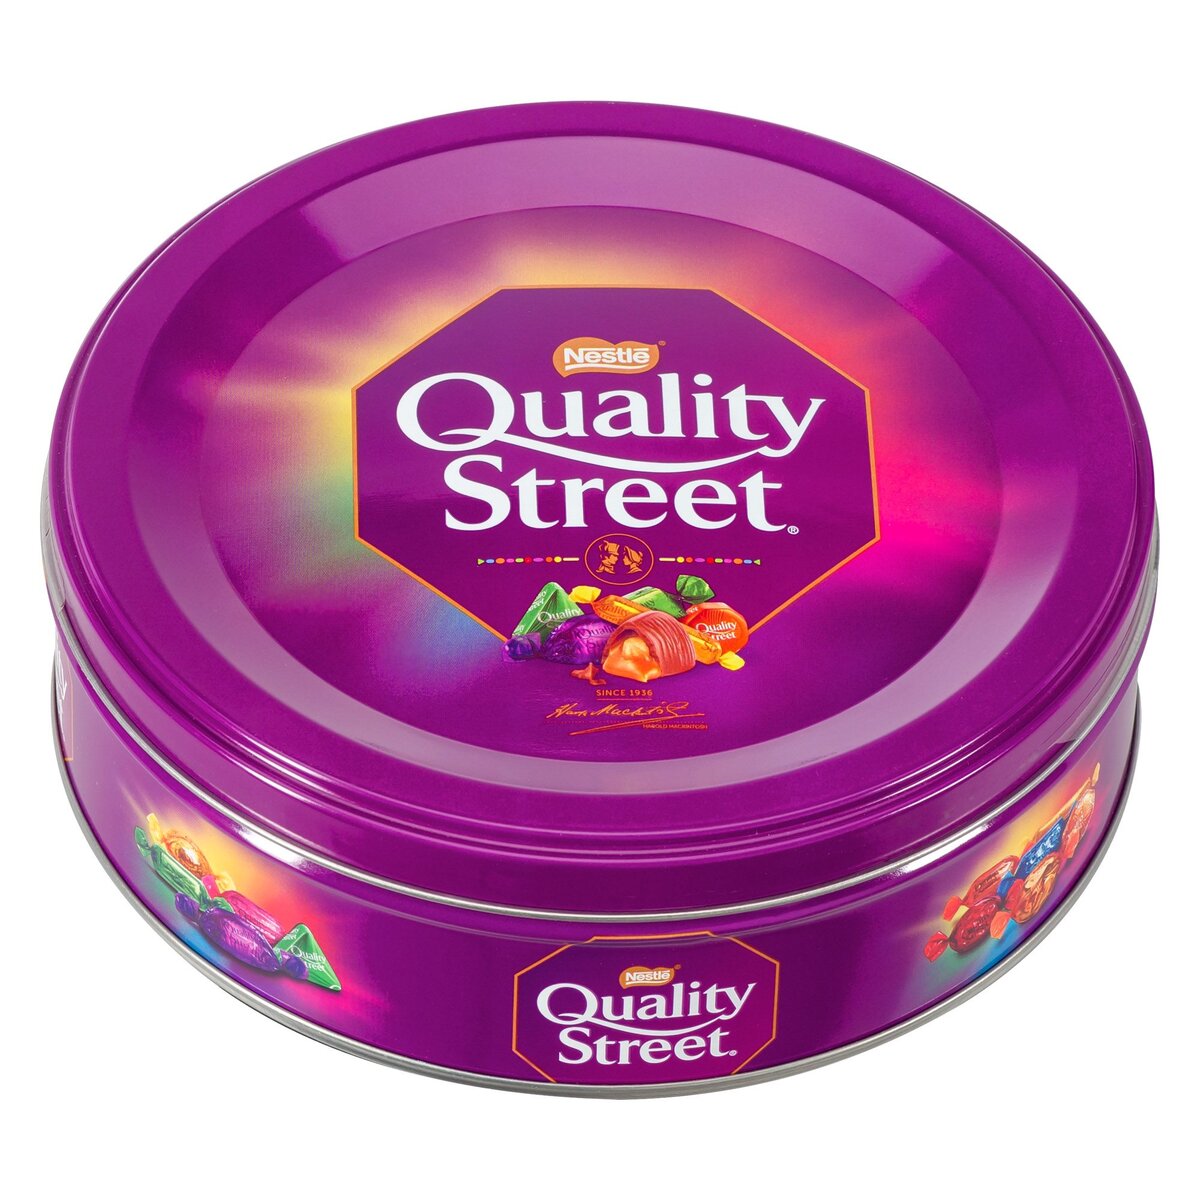 NESTLE : Quality Street - Assortiment de bonbons et chocolats - chronodrive